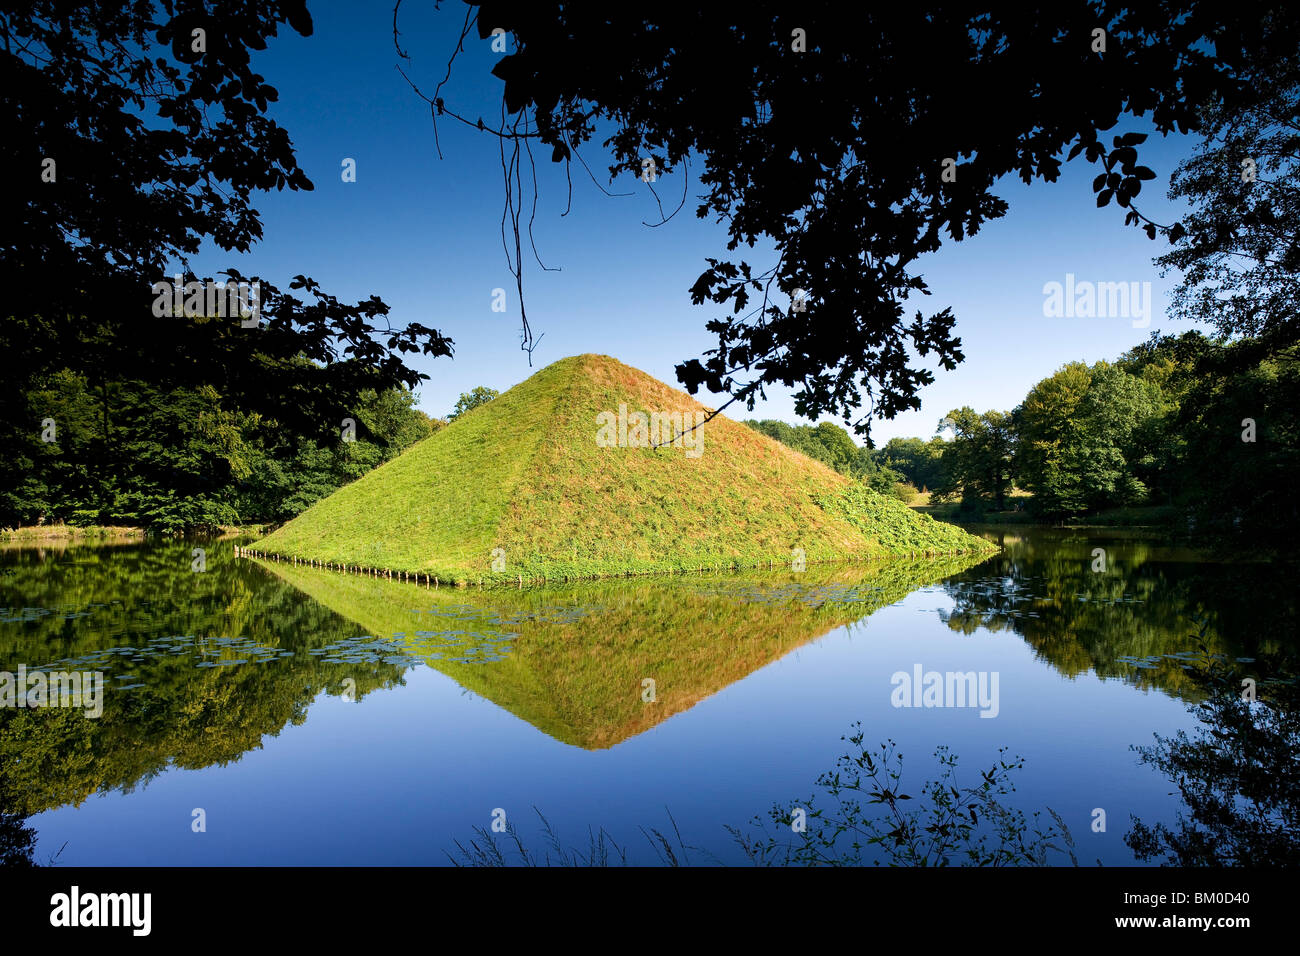 Pyramide in der Pyramide-See auf dem Gelände des Branitzer Schlosses, Fuerst Pueckler Park in der Nähe von Cottbus, Brandenburg, Deutschland, Europa Stockfoto